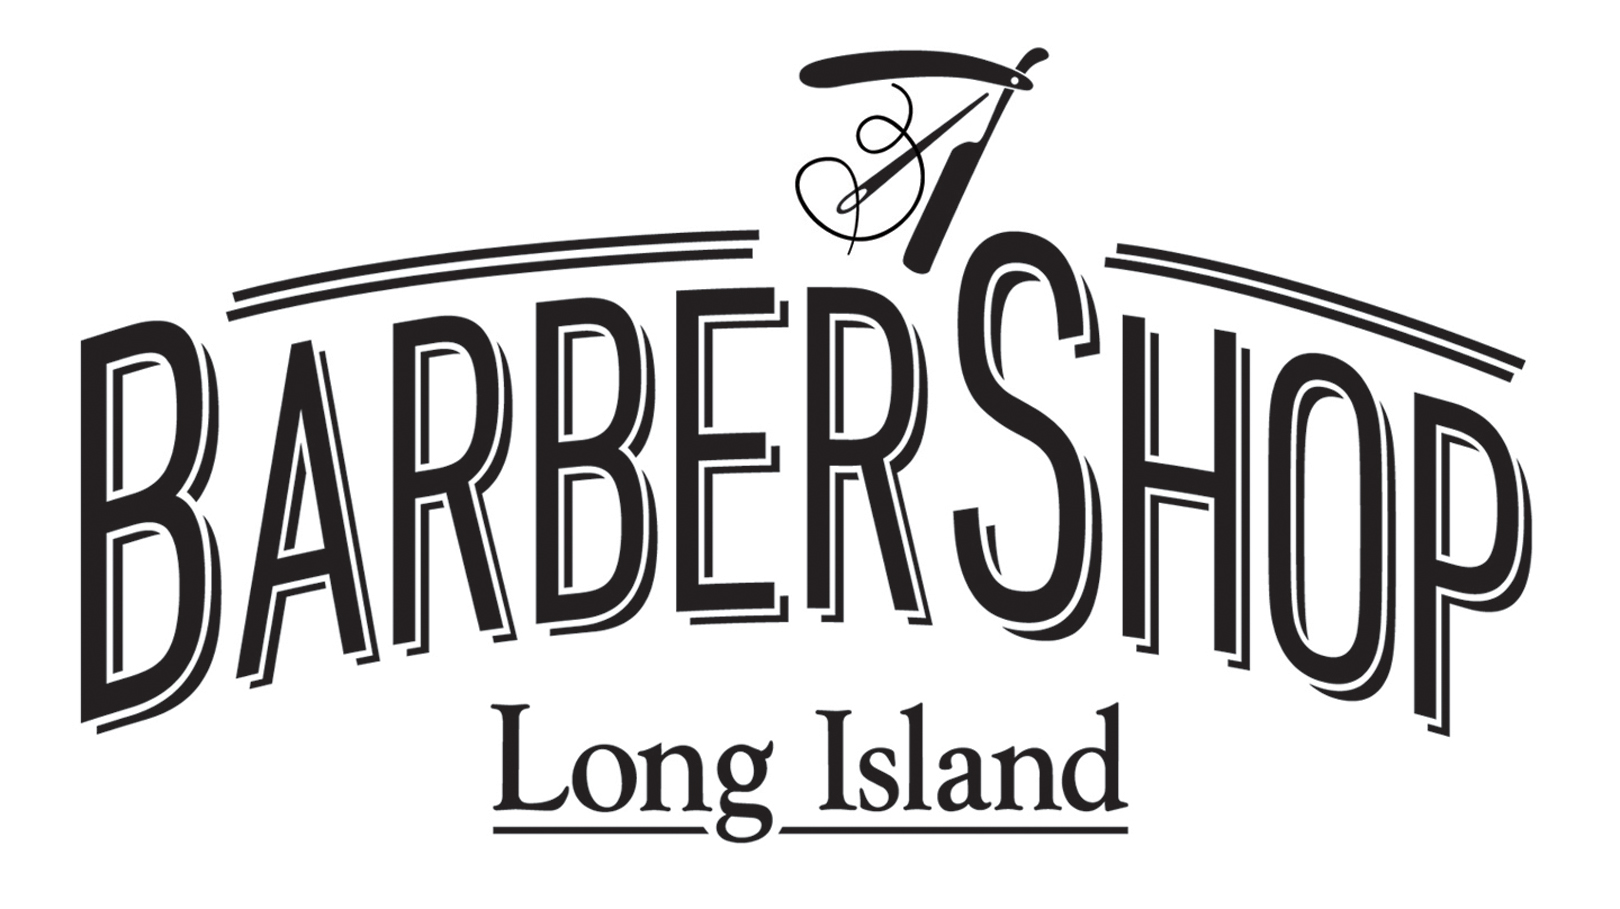 Long Island For Men Barber Shop